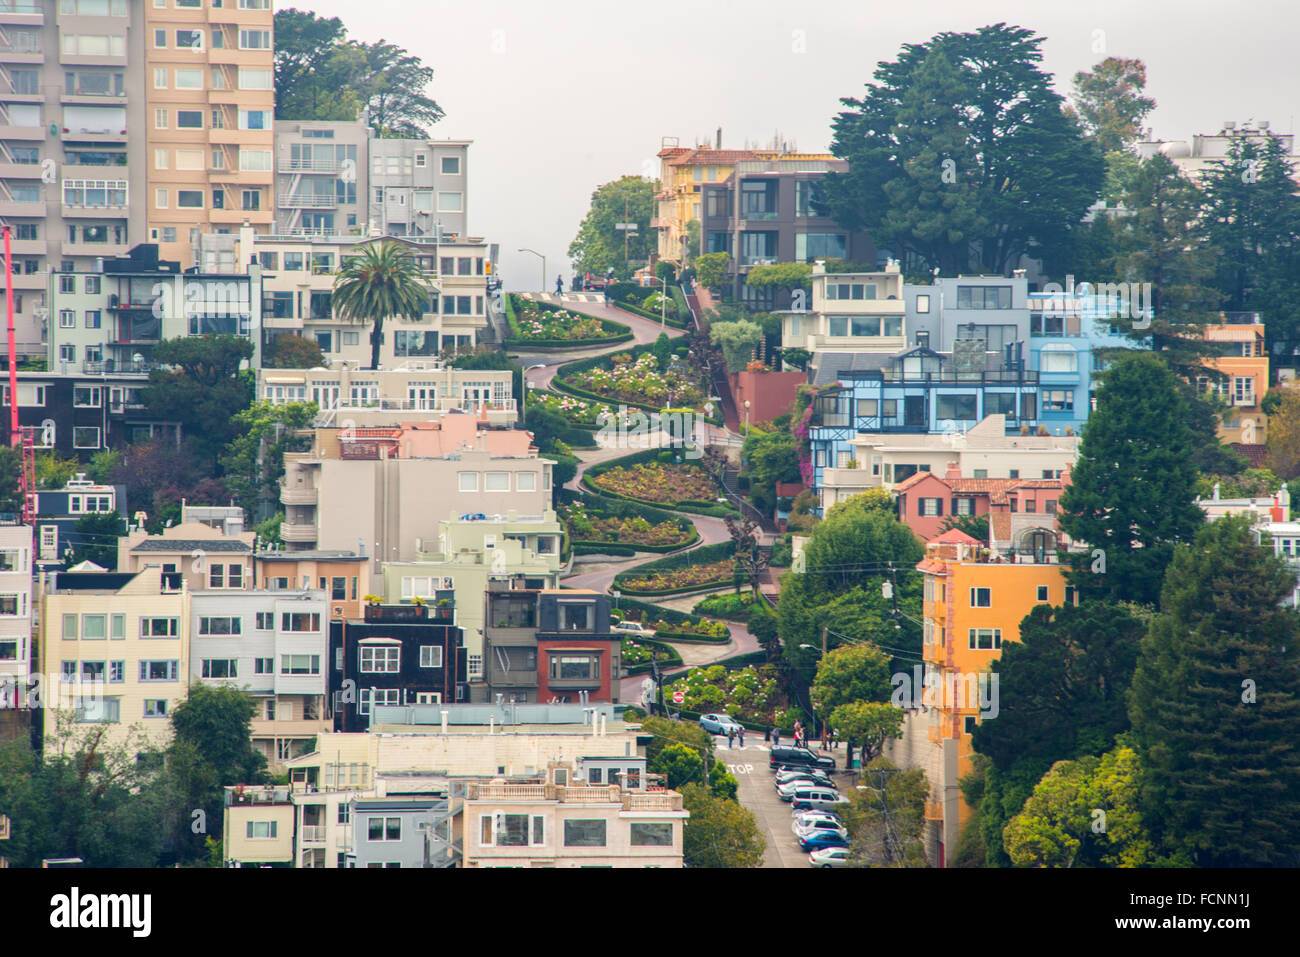 Lombard street, San Francisco Stock Photo